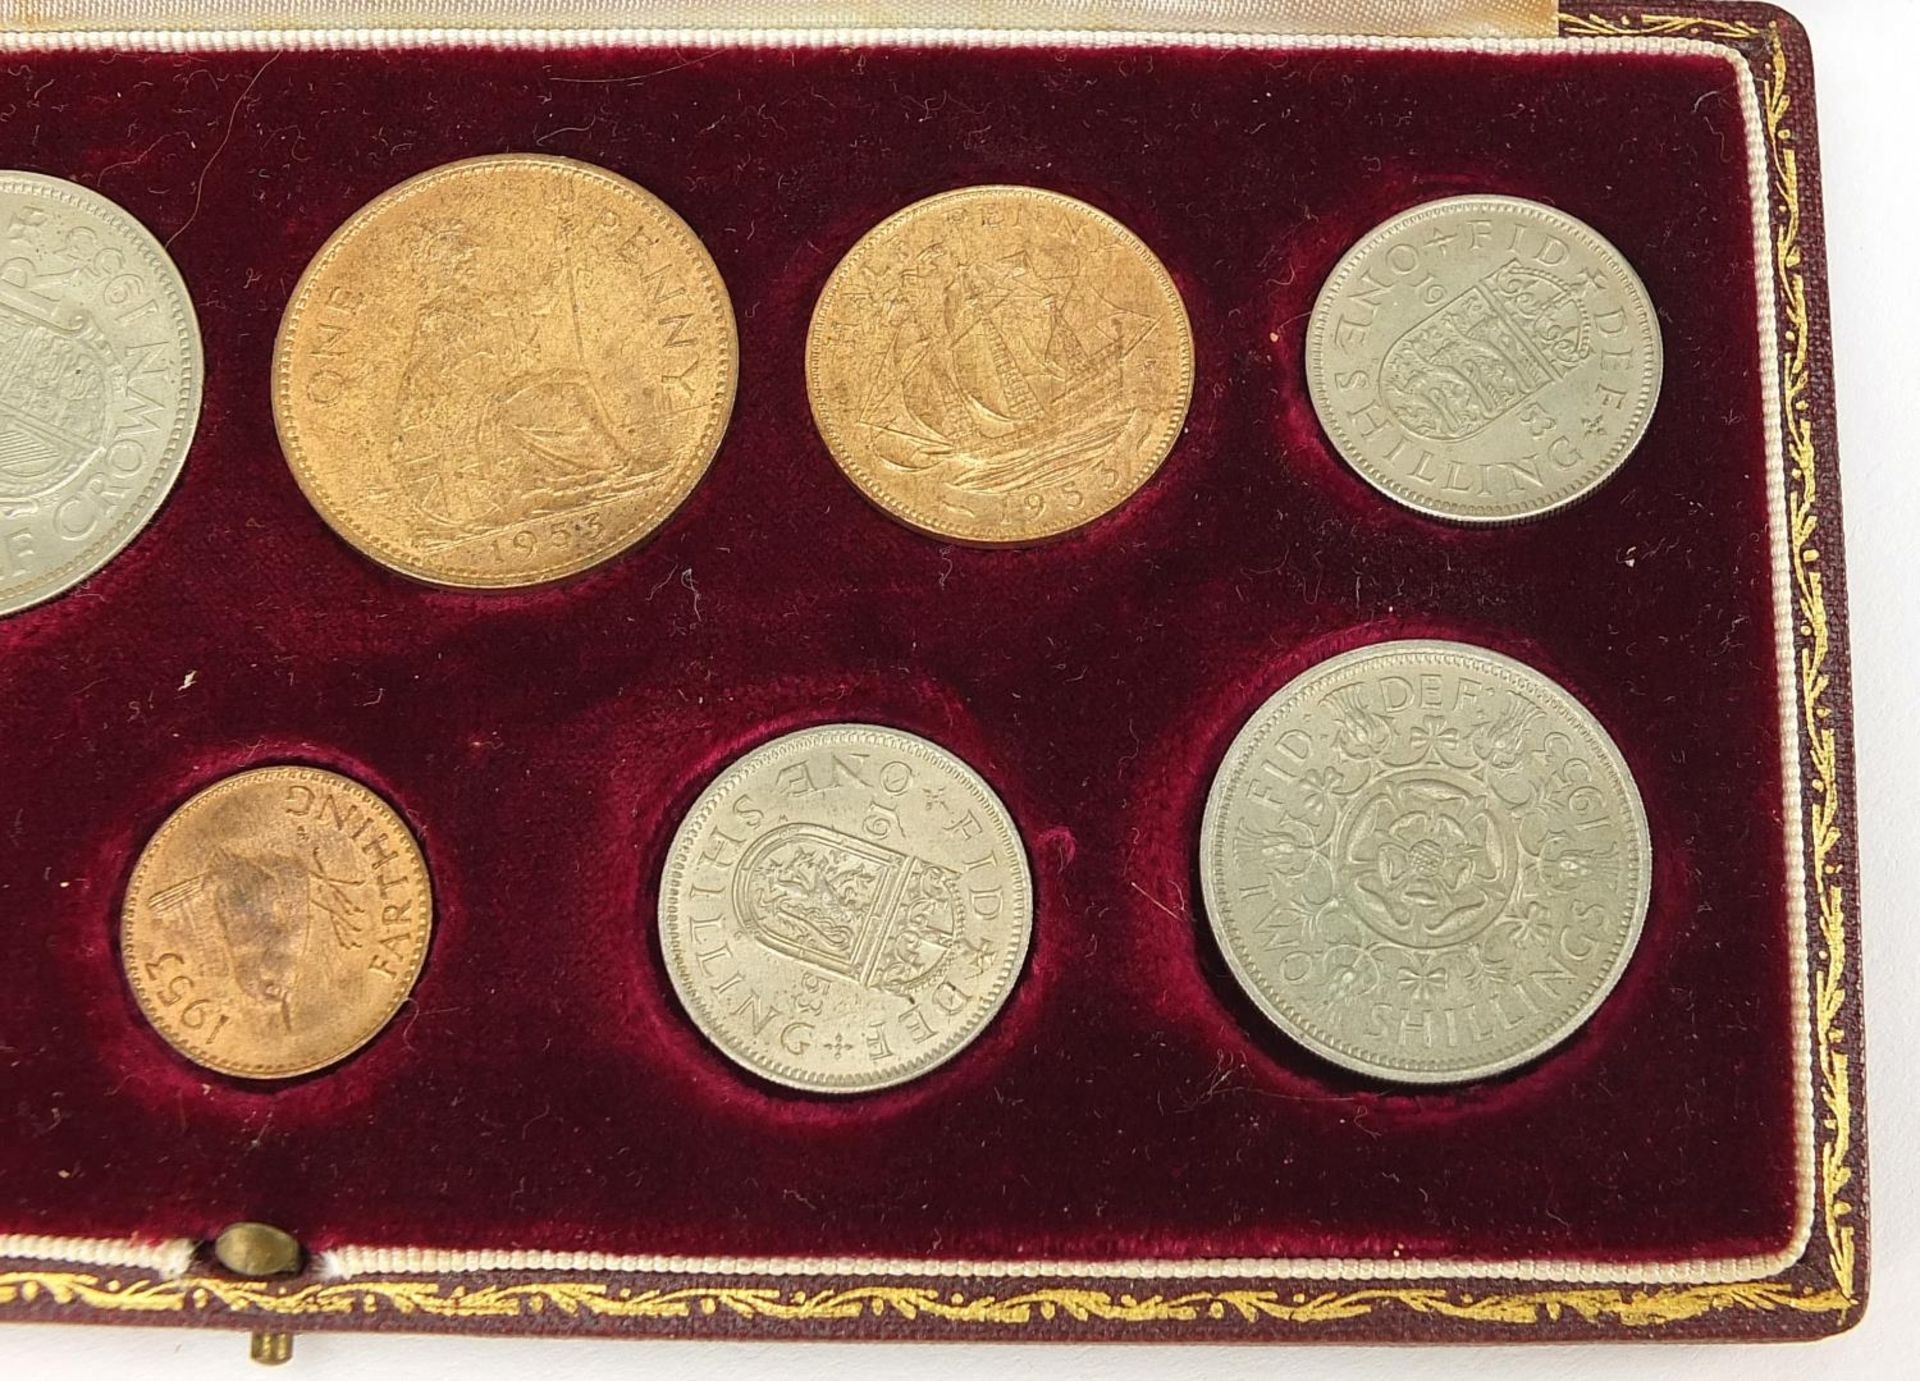 Elizabeth II 1953 specimen coin set housed in a velvet lined tooled leather case, 20cm wide - Image 3 of 5